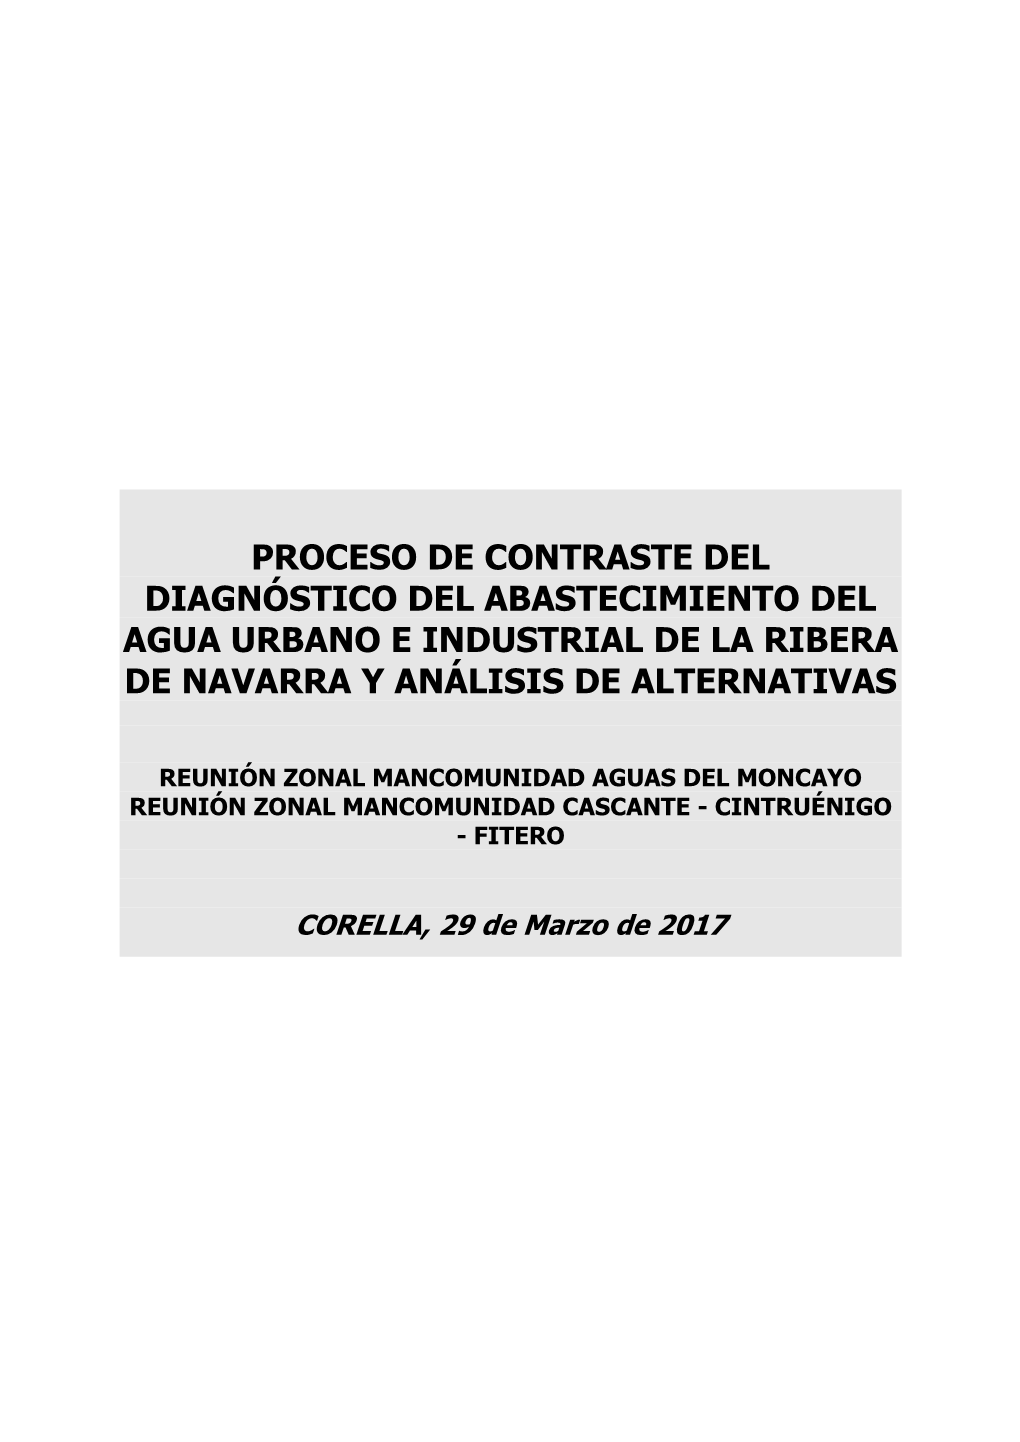 Proceso De Contraste Del Diagnóstico Del Abastecimiento Del Agua Urbano E Industrial De La Ribera De Navarra Y Análisis De Alternativas